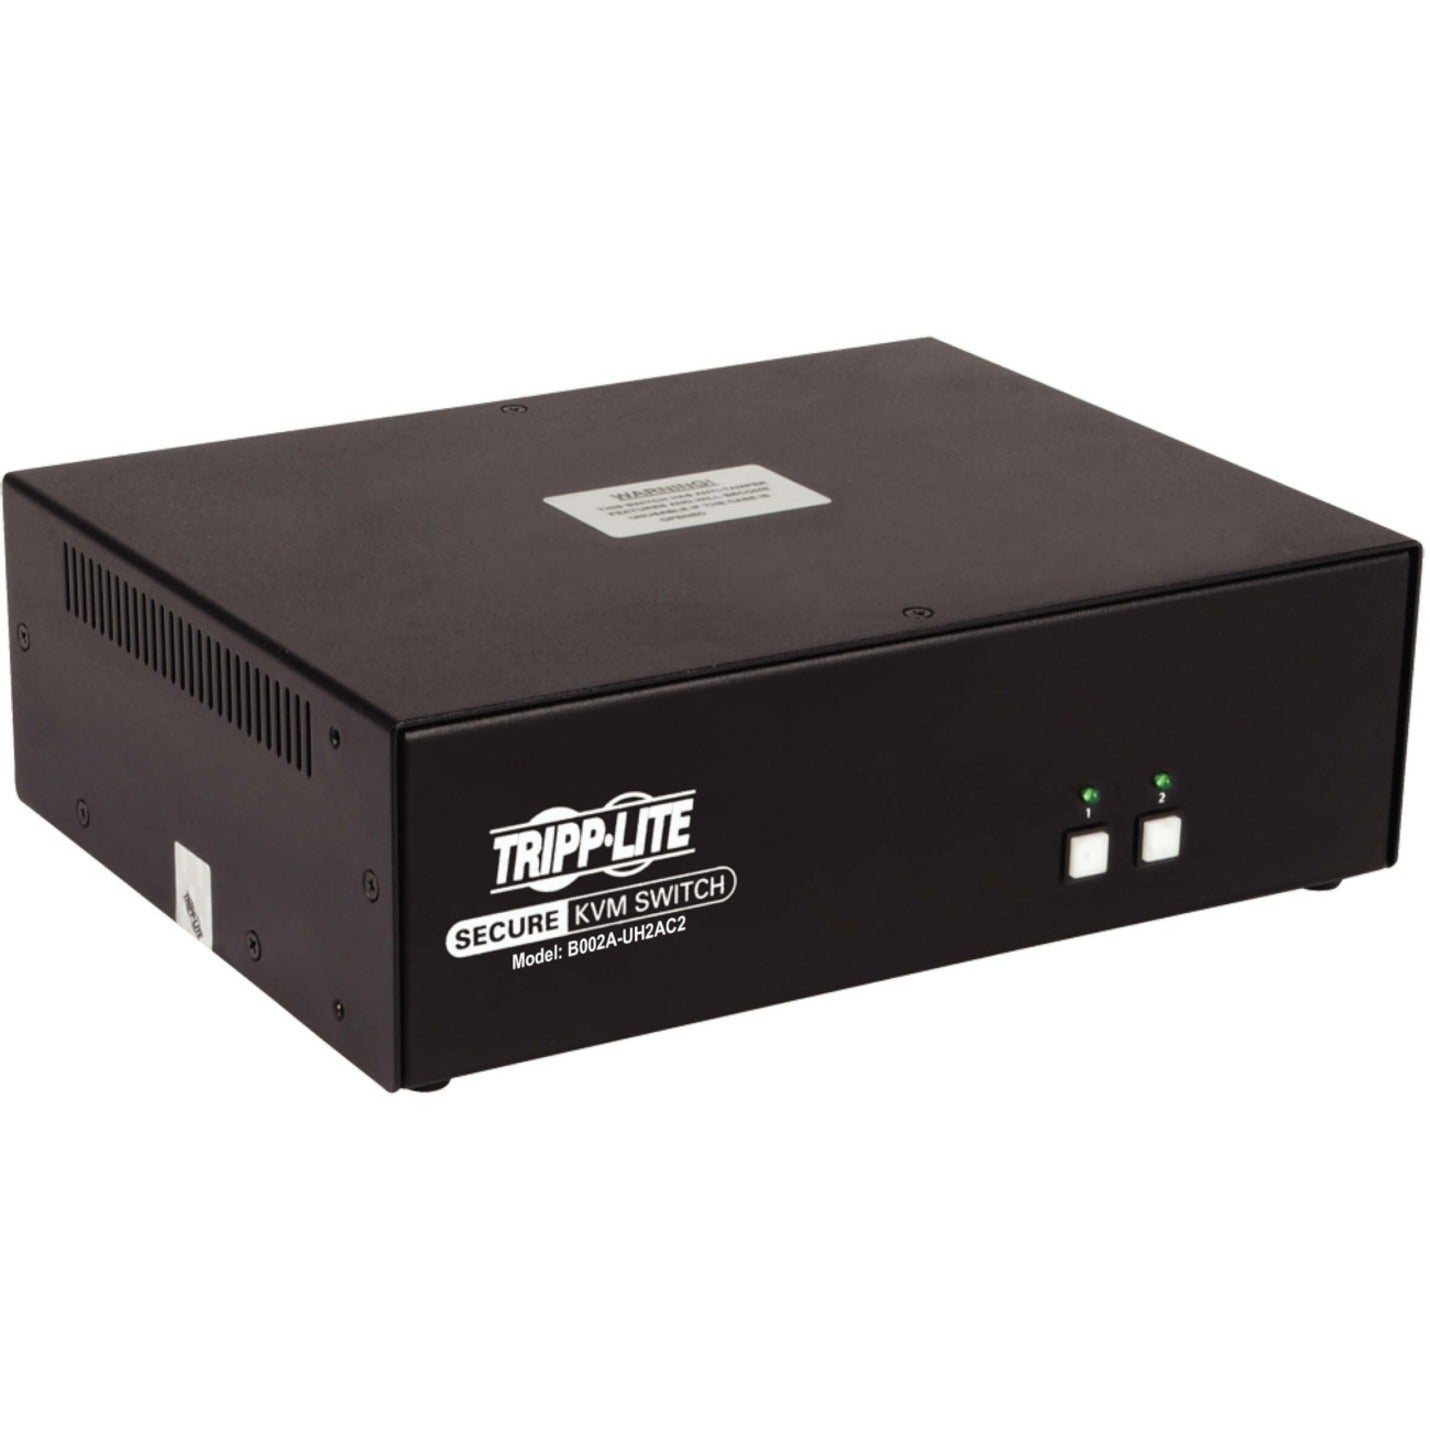 Tripp Lite B002A-UH2AC2 2-Port Commutateur KVM Sécurisé à Double Moniteur HDMI - 4K NIAP PP3.0 Audio CAC TAA